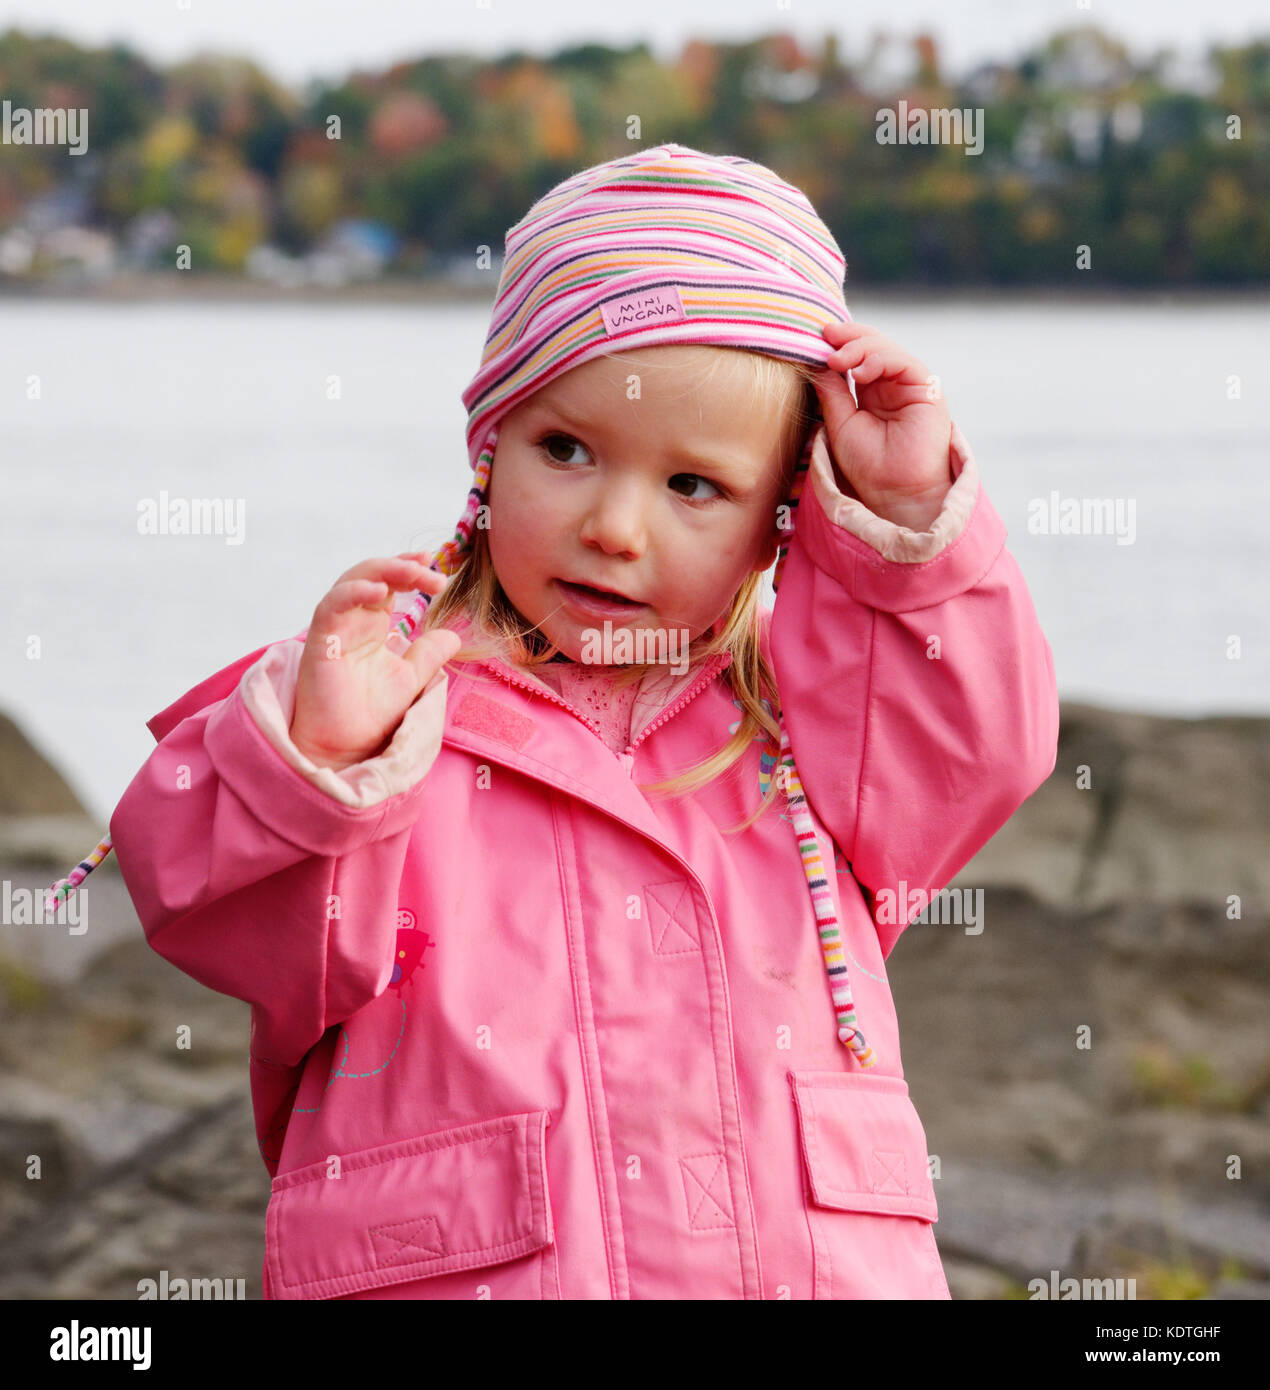 Ein kleines Mädchen (3 Jahre alt) trägt einen rosa Regenmantel und Hut Stockfoto